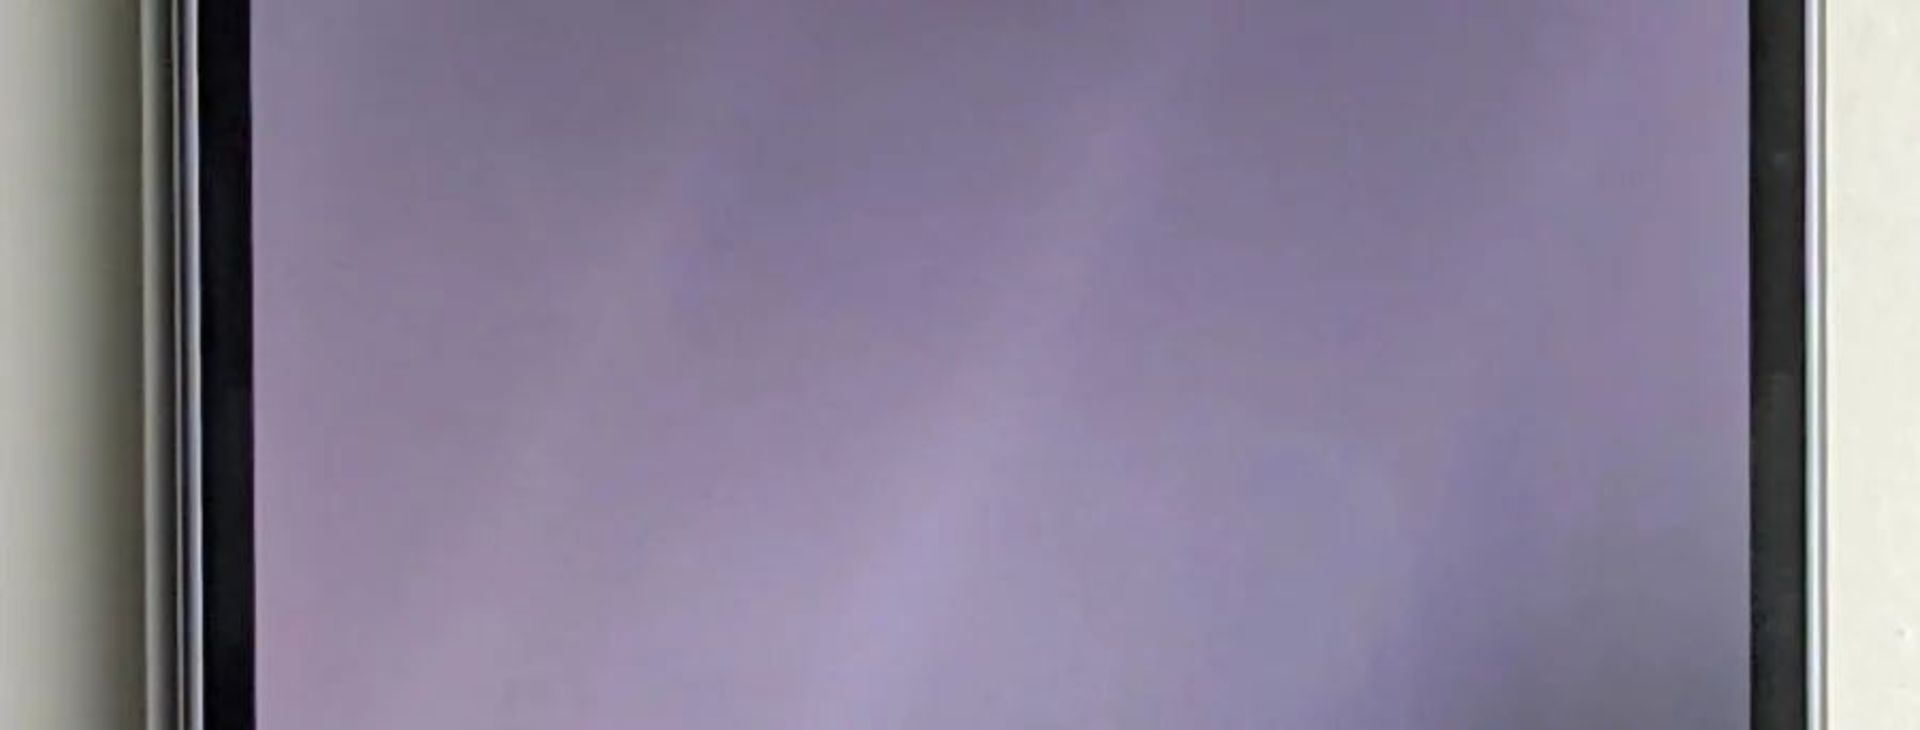 تصویر فاش شده از نمایشگر بیرونی گلکسی زد فولد ۶